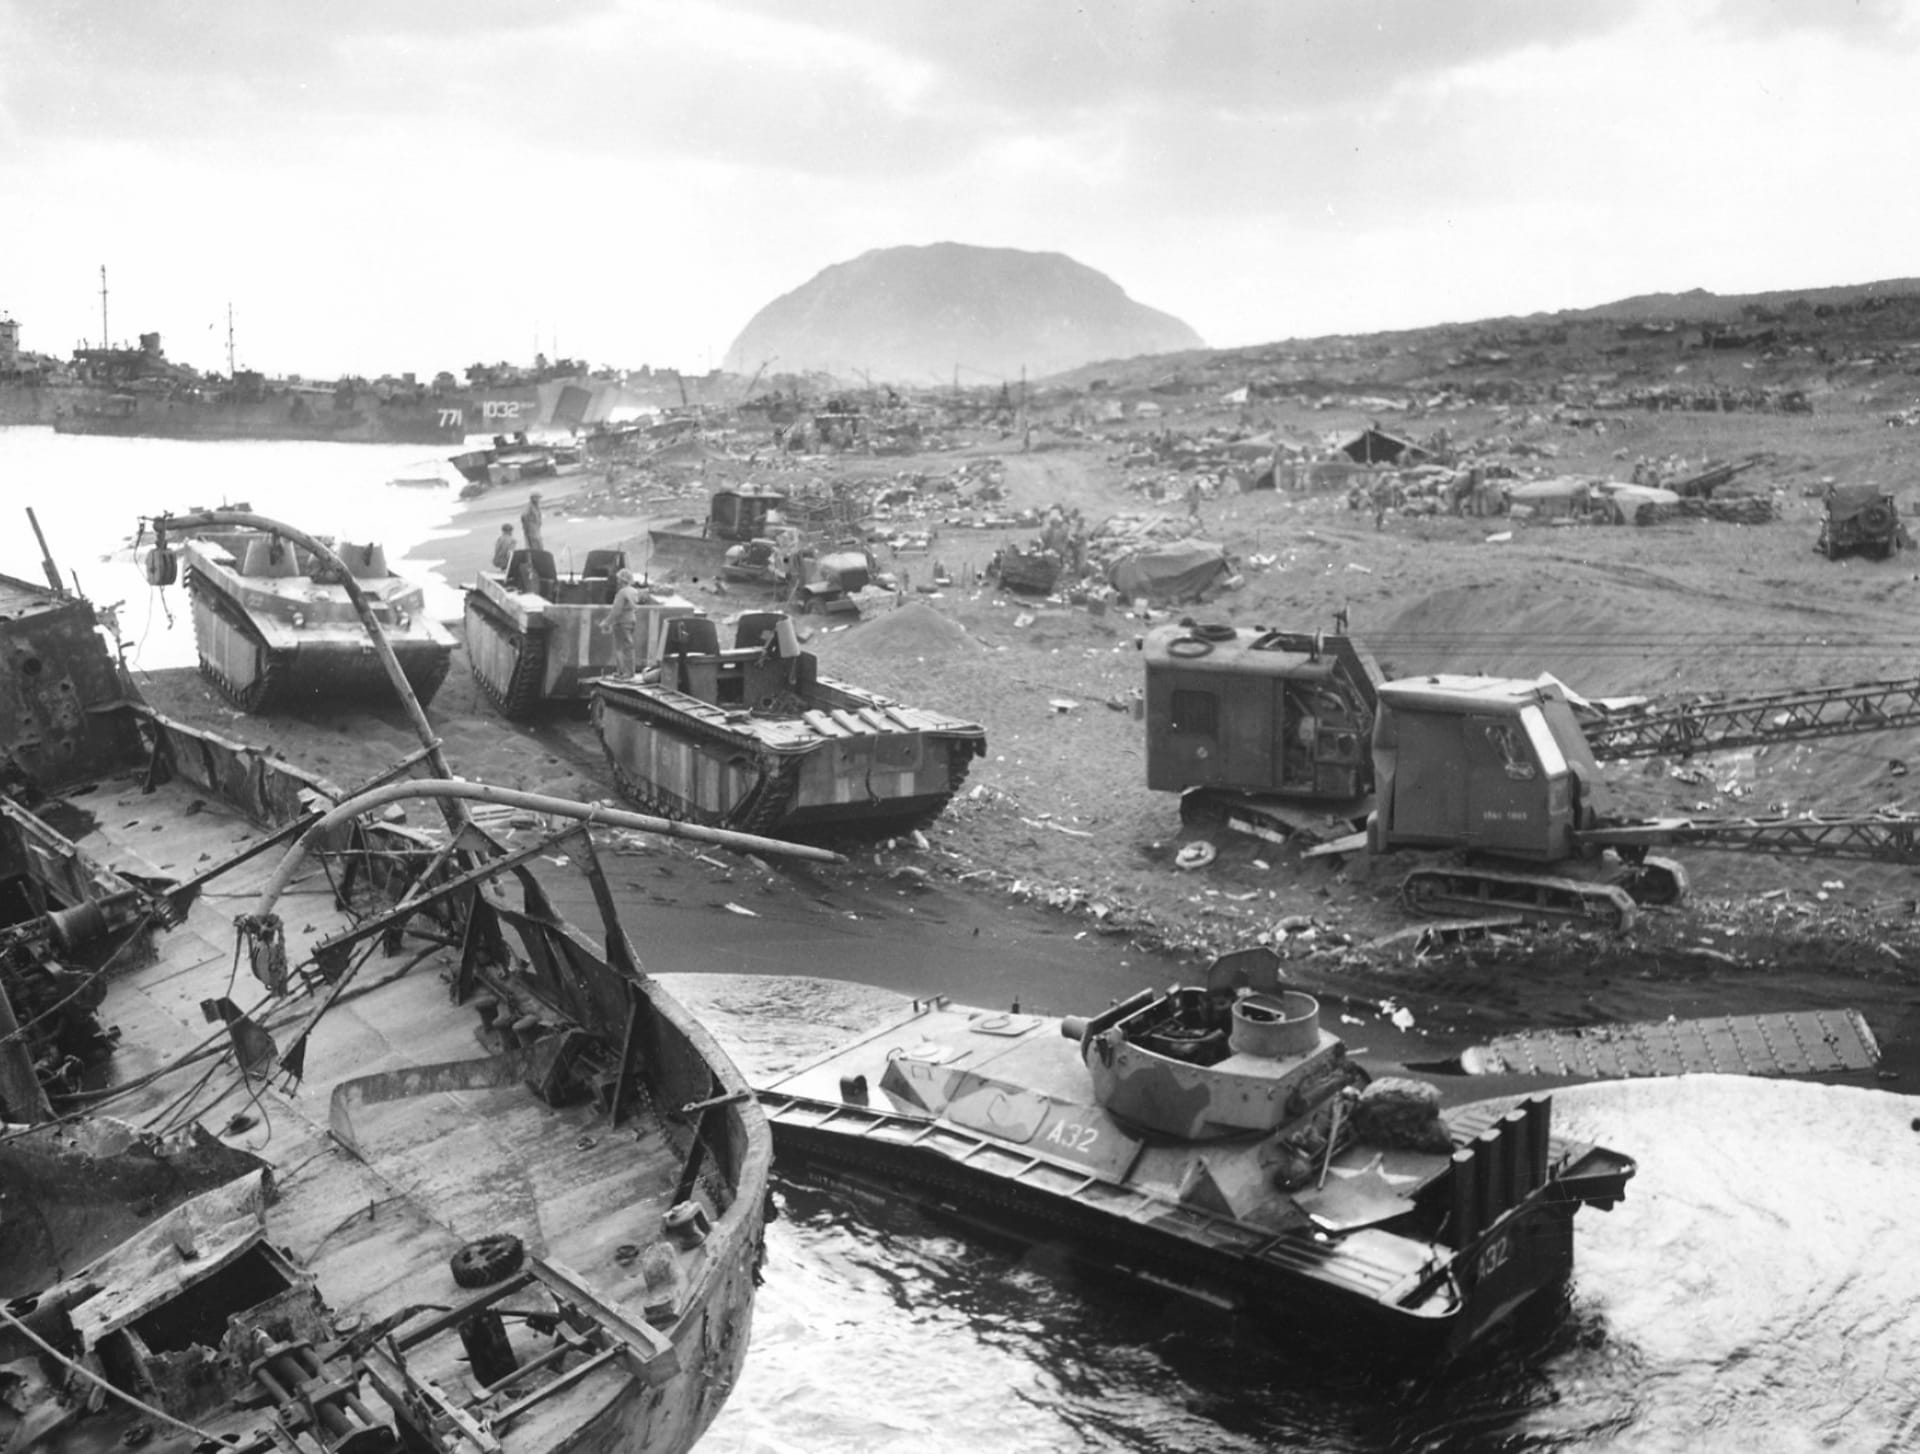 Battle Of Iwo Jima at 1280 x 960 size wallpapers HD quality